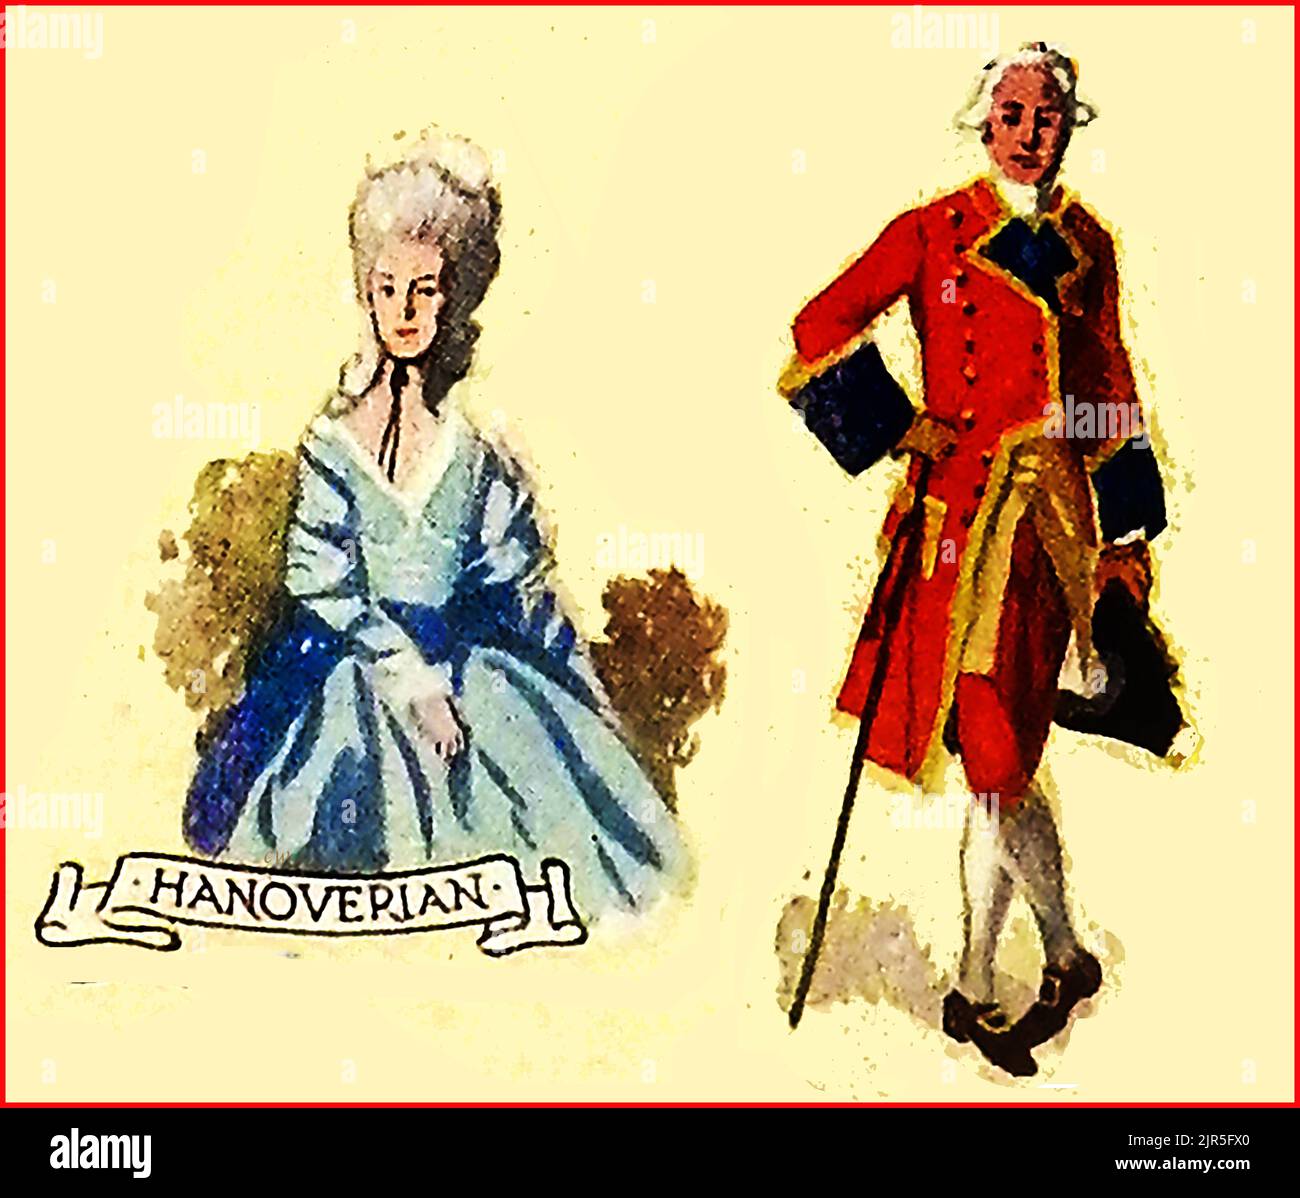 MODE EN GRANDE-BRETAGNE - une vieille image colorée montrant des vêtements typiques à l'époque hanoverienne. Banque D'Images